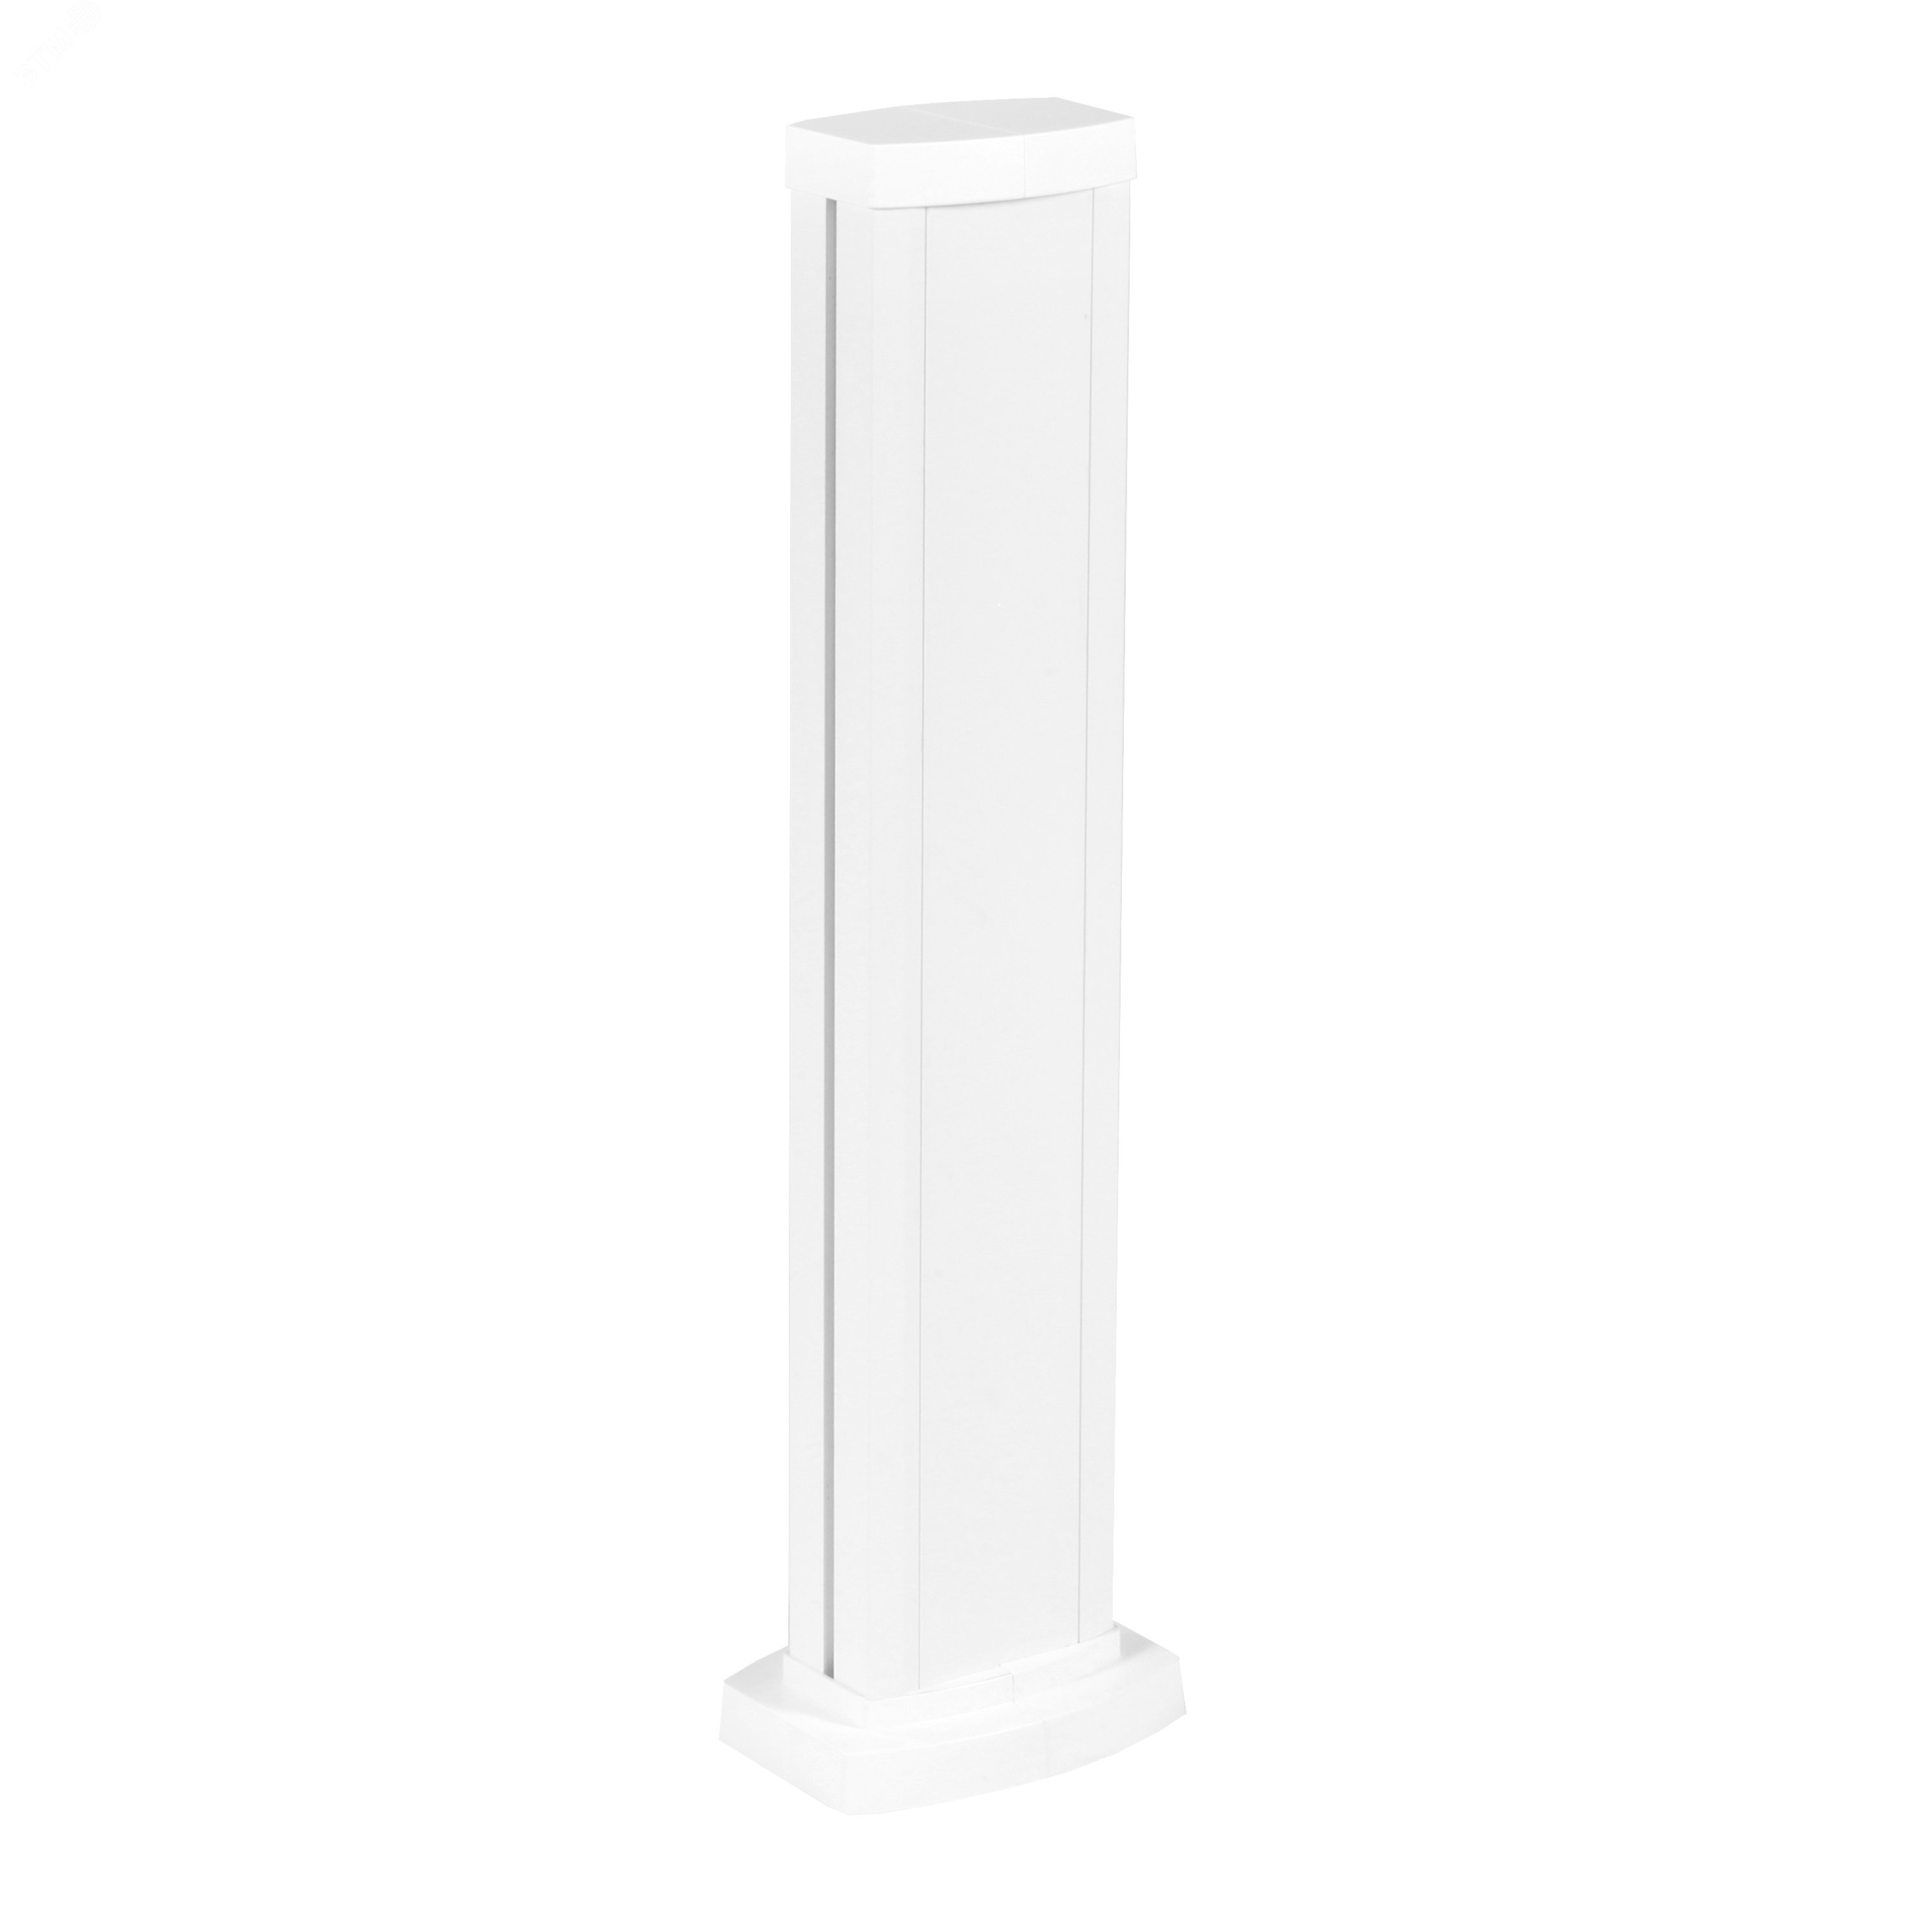 Универсальная мини-колонна алюминиевая с крышкой из алюминия 1 секция, высота 0,68 метра, цвет белый 653103 Legrand - превью 2